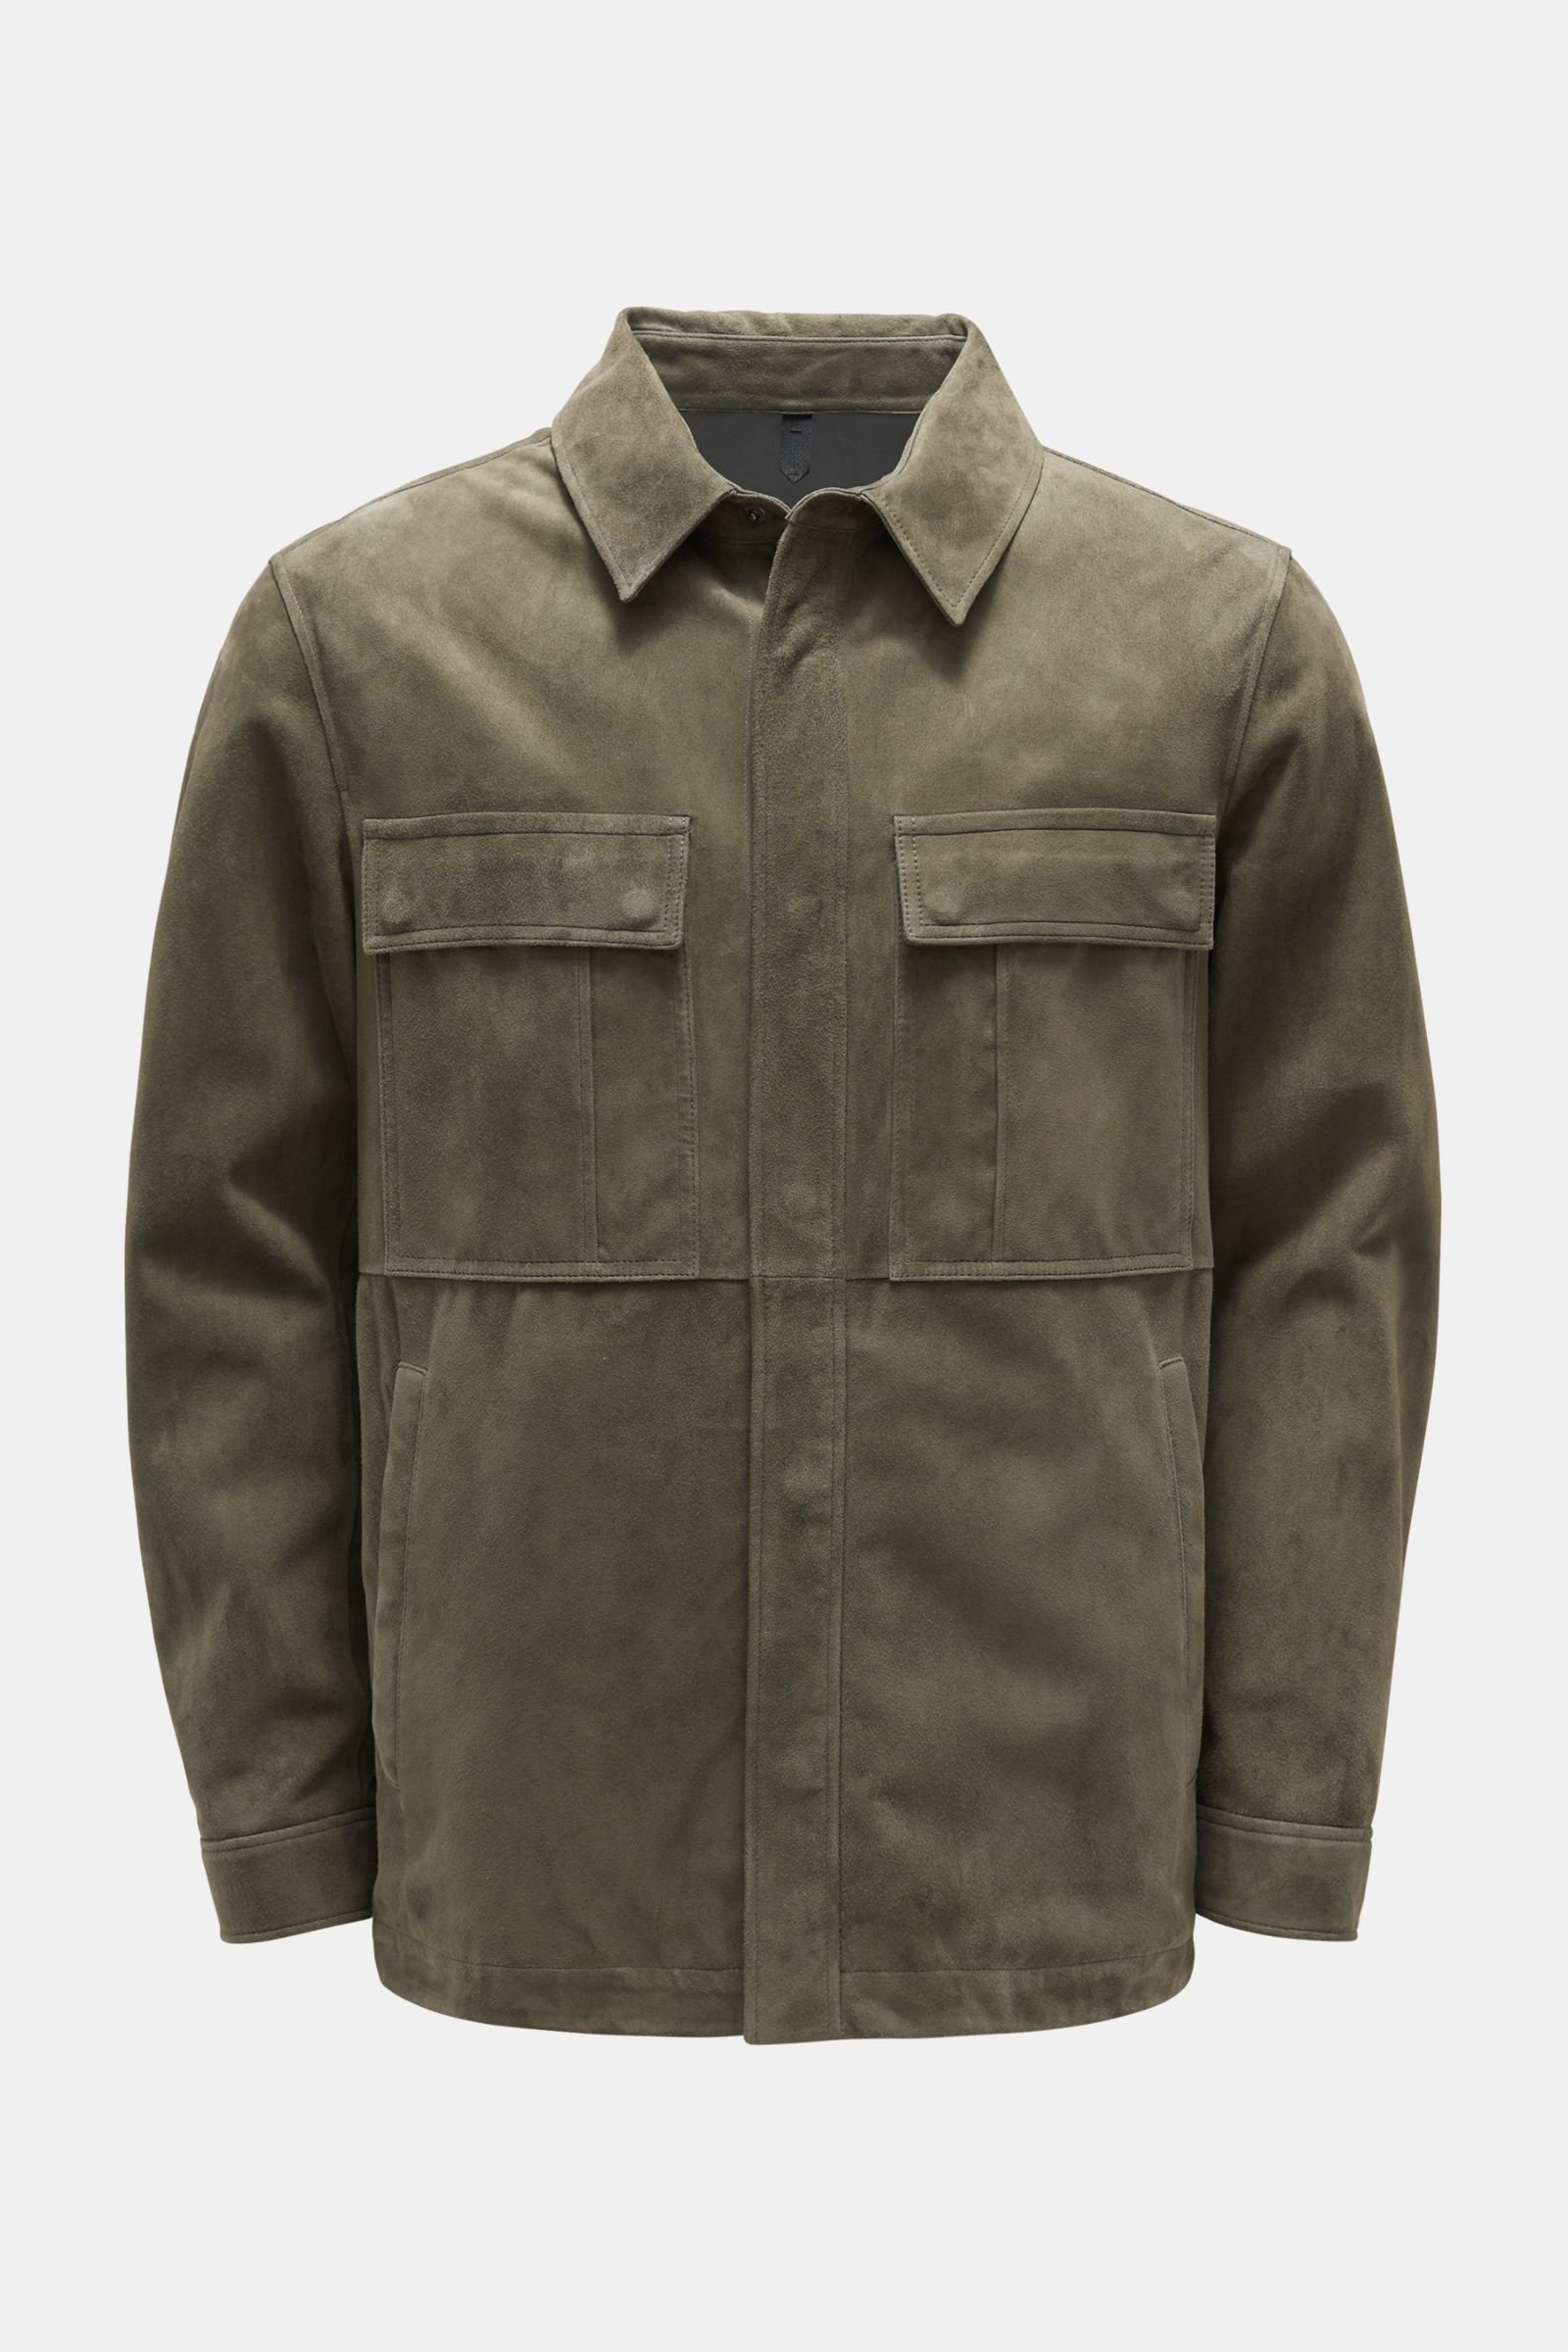 Suede jacket grey-green